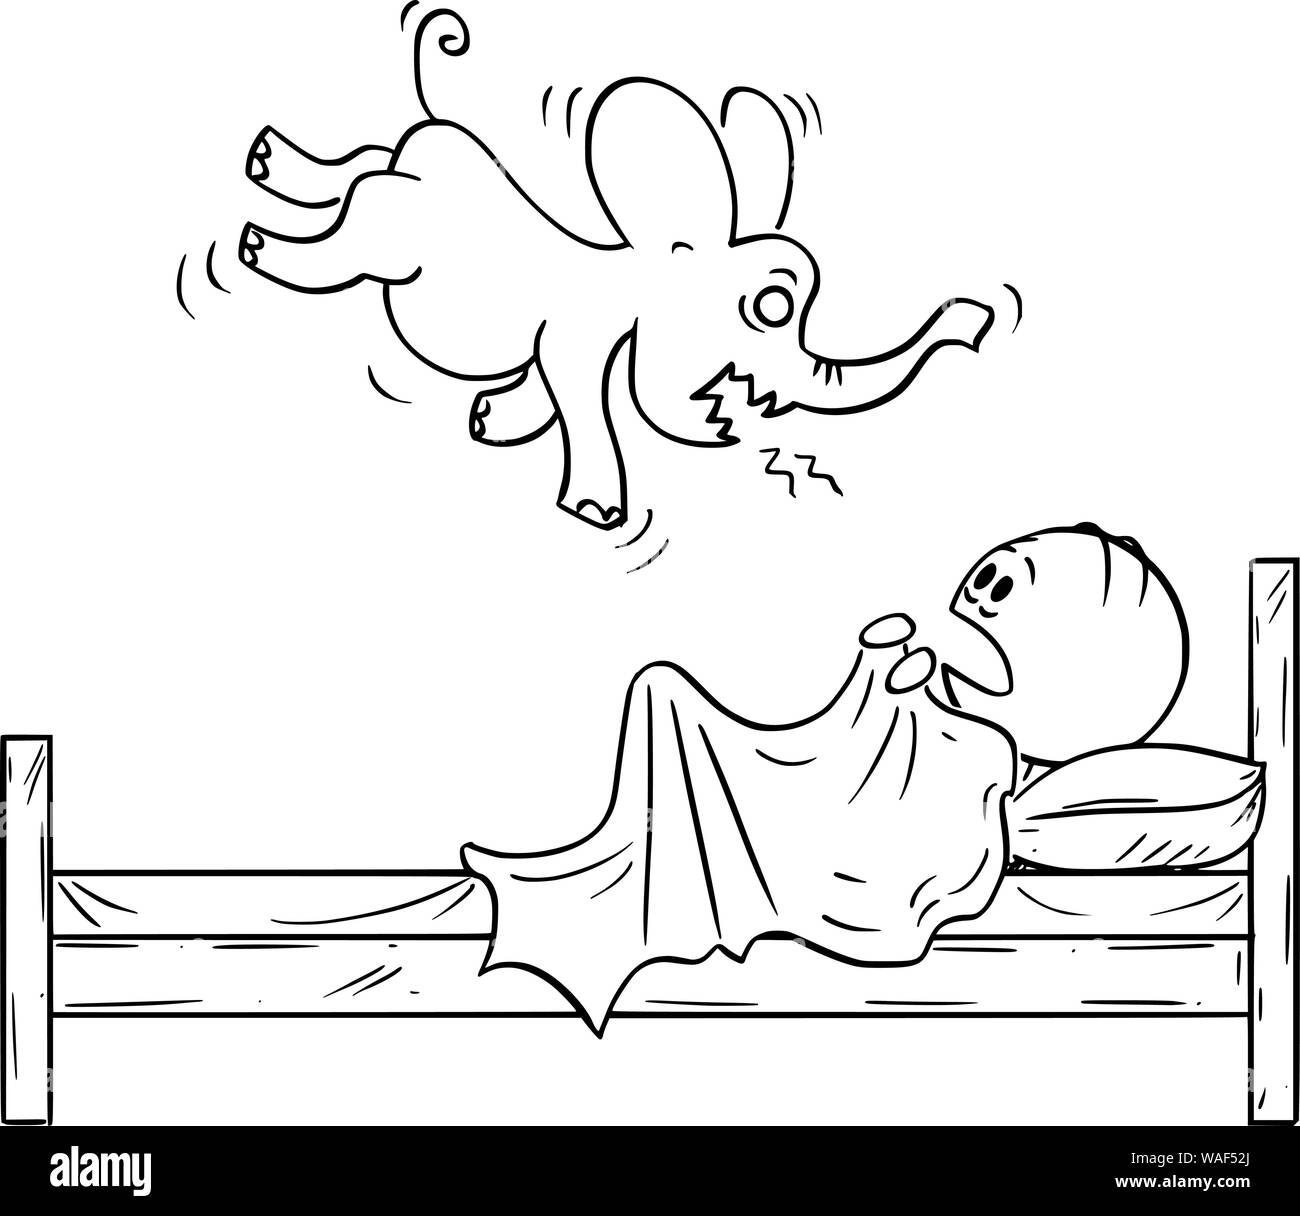 Vektor cartoon Strichmännchen Zeichnen konzeptionelle Darstellung der ängstliche Mensch im Bett verstecken von seinem Alptraum Elefant Monster. Stock Vektor